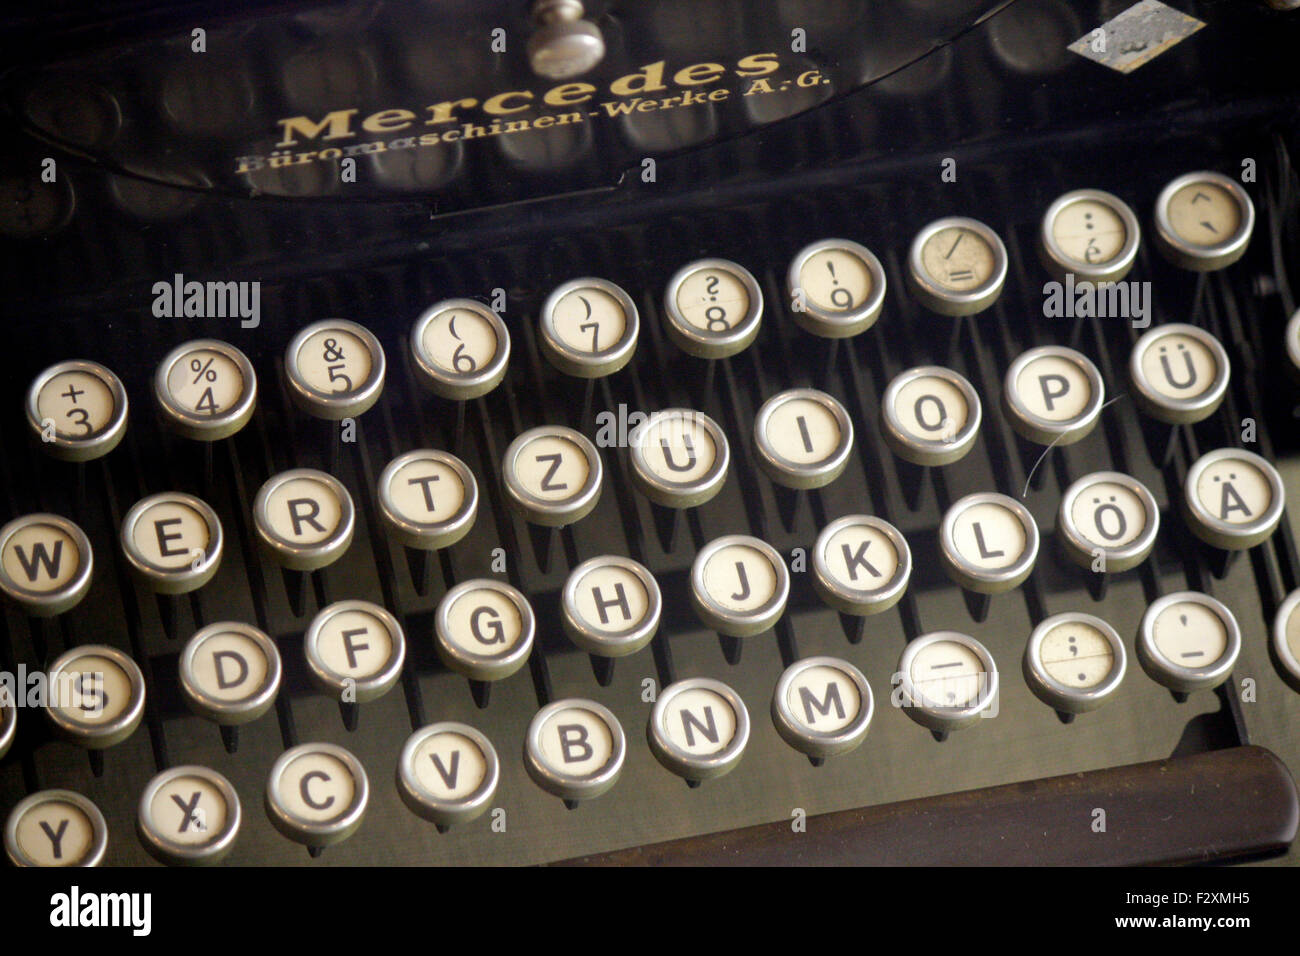 Tastatur einer historischen Schreibmaschine - Deutsches Technikmuseum, Berlin-Kreuzberg. Stock Photo